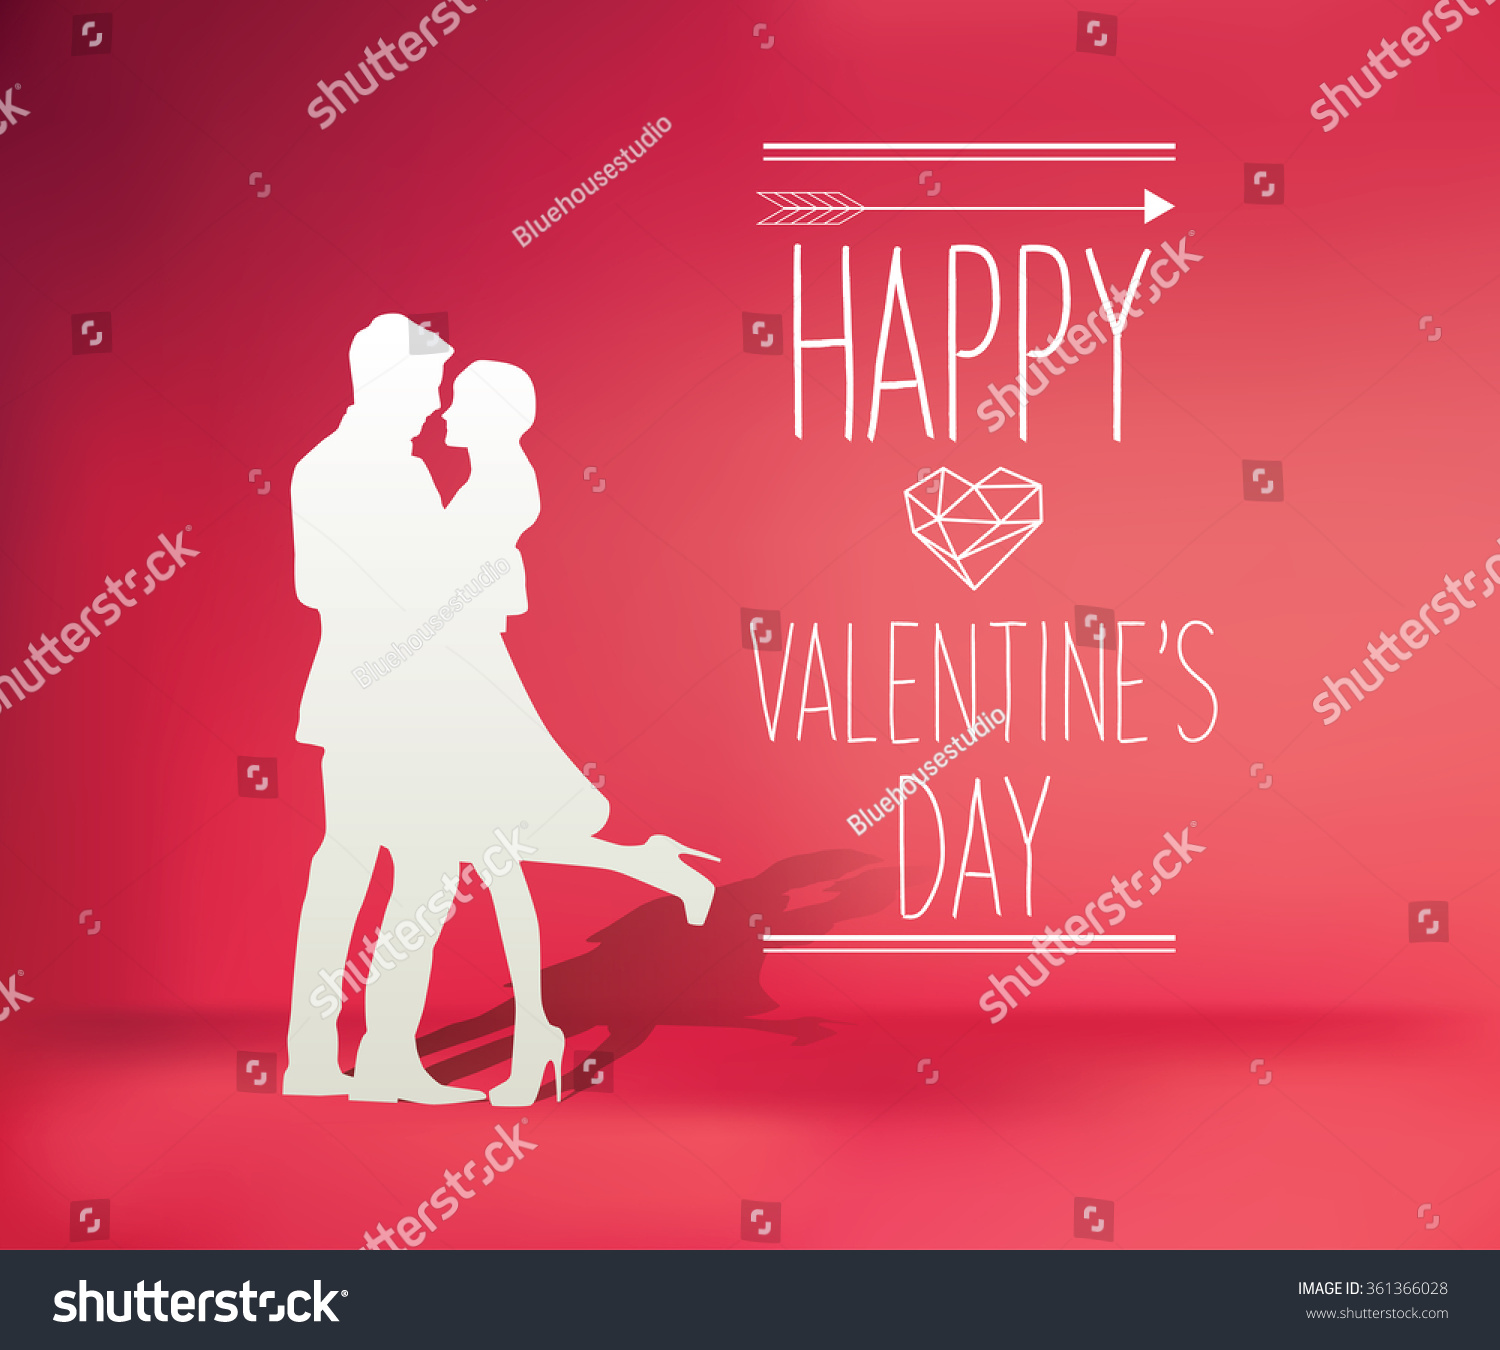 Happy Valentine's Day #361366028